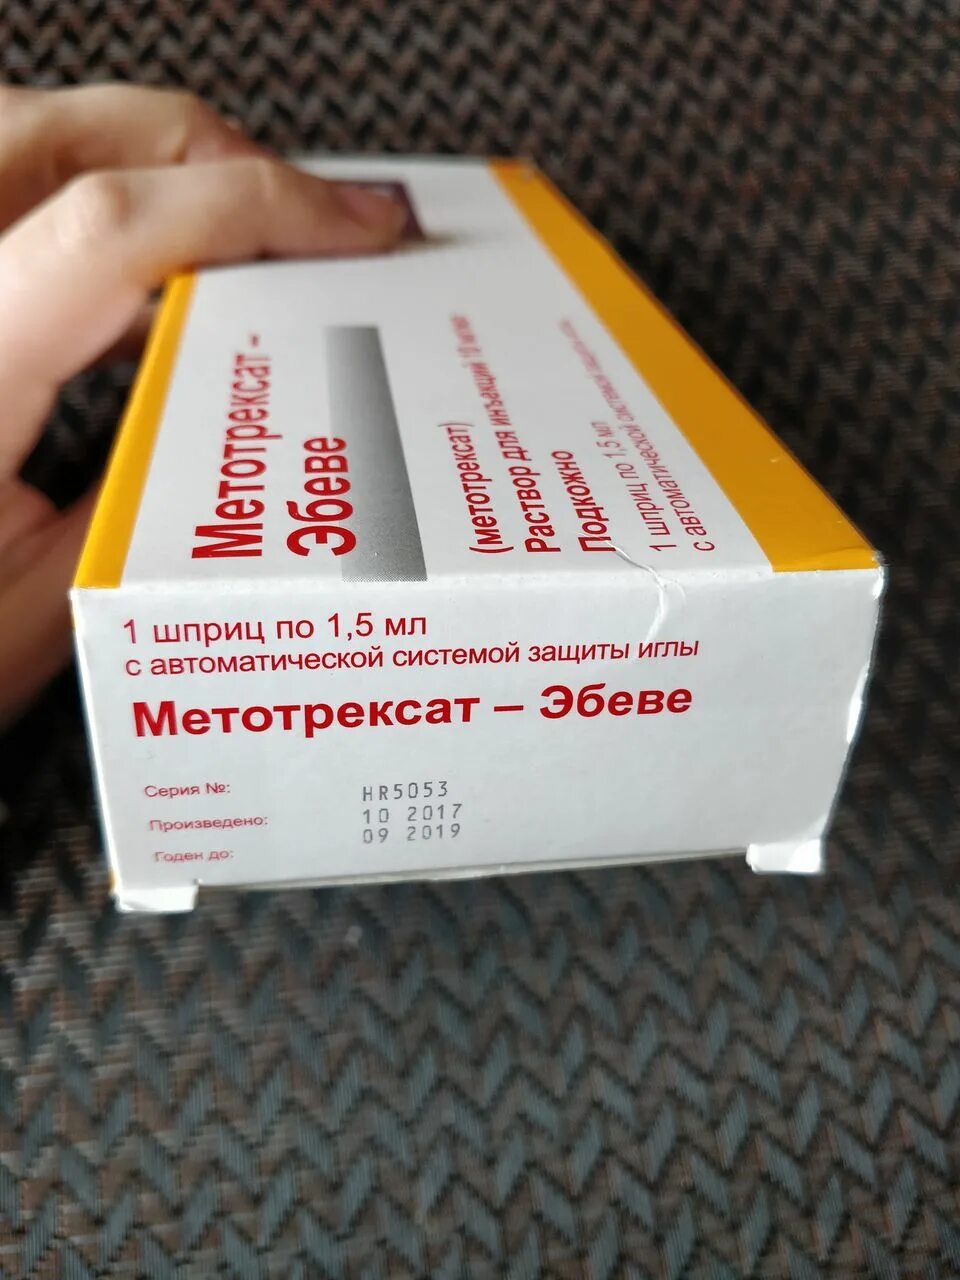 Купить метотрексат 15 мг